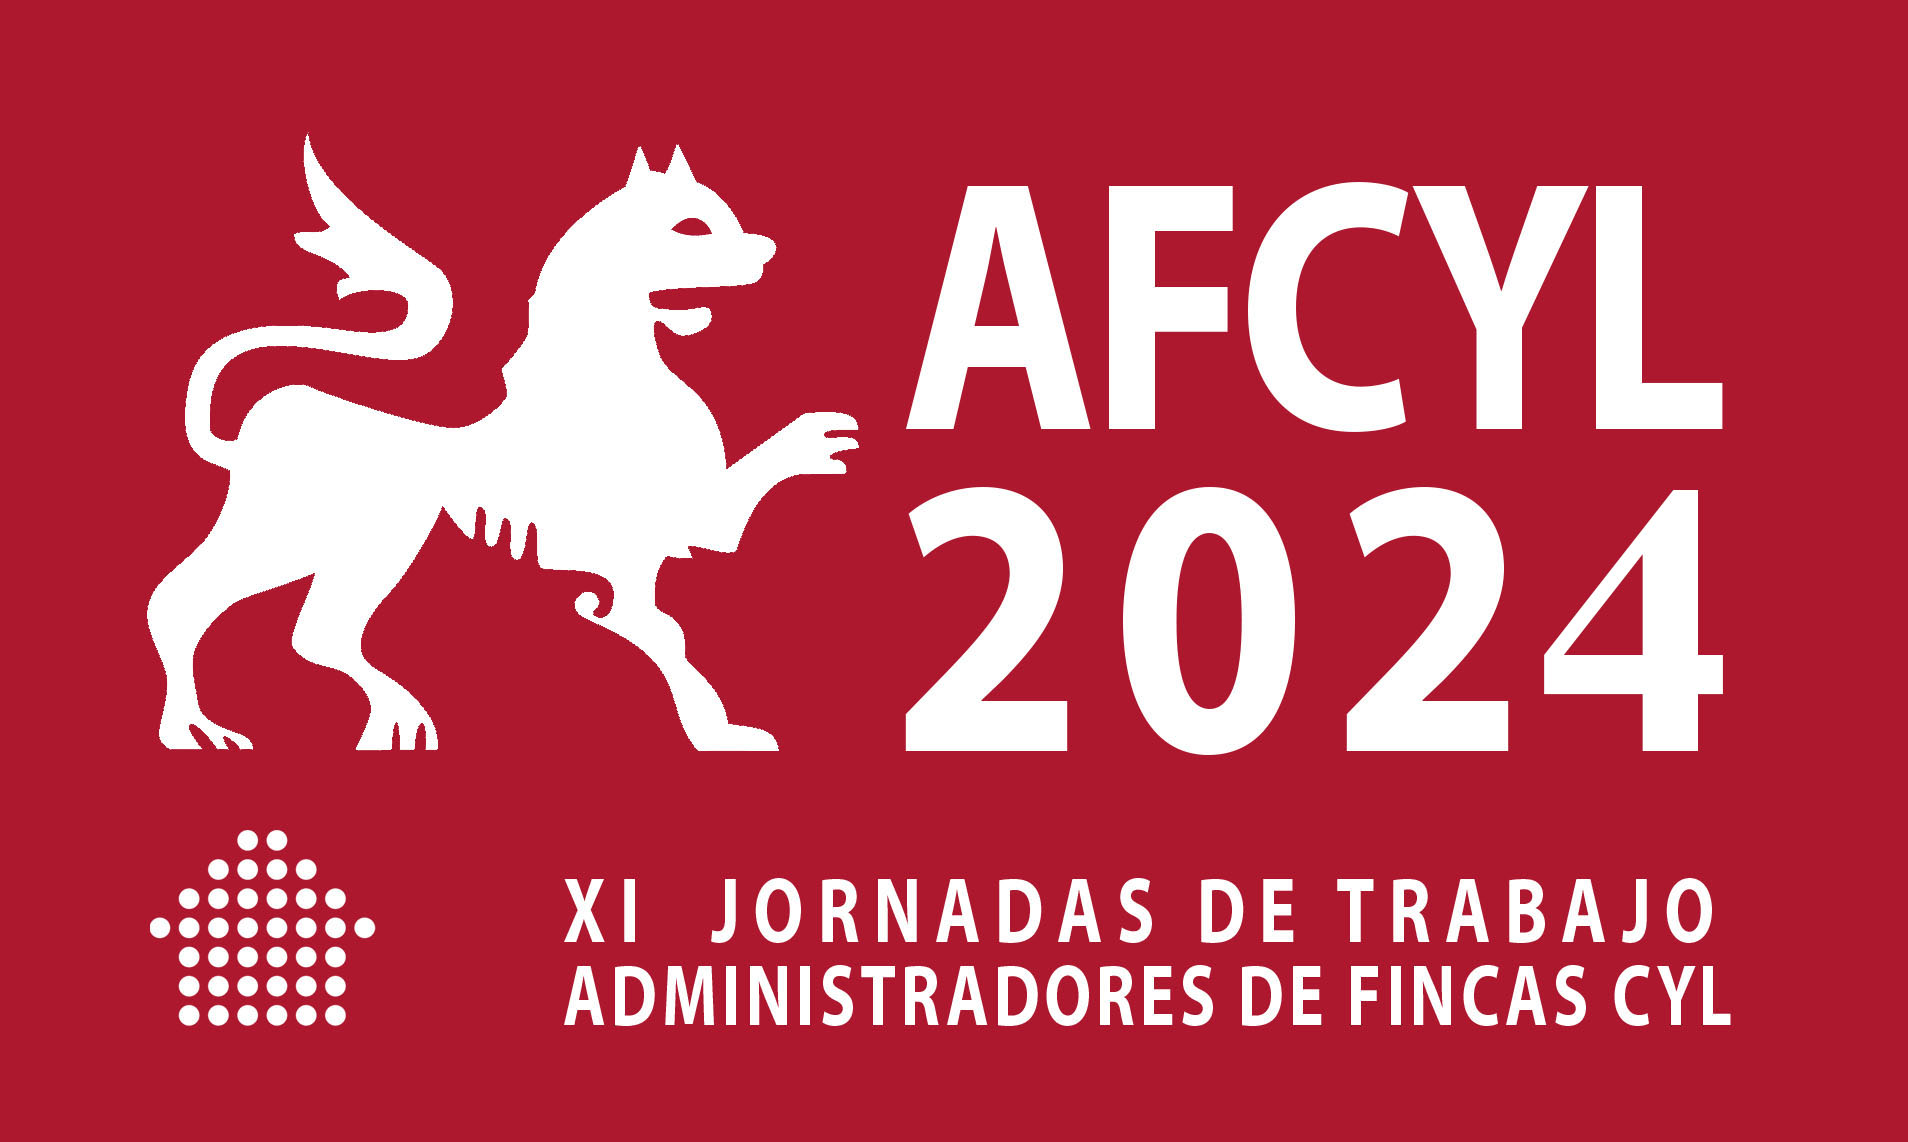 LOGO AFCYL 2024 FONDO GRANATE